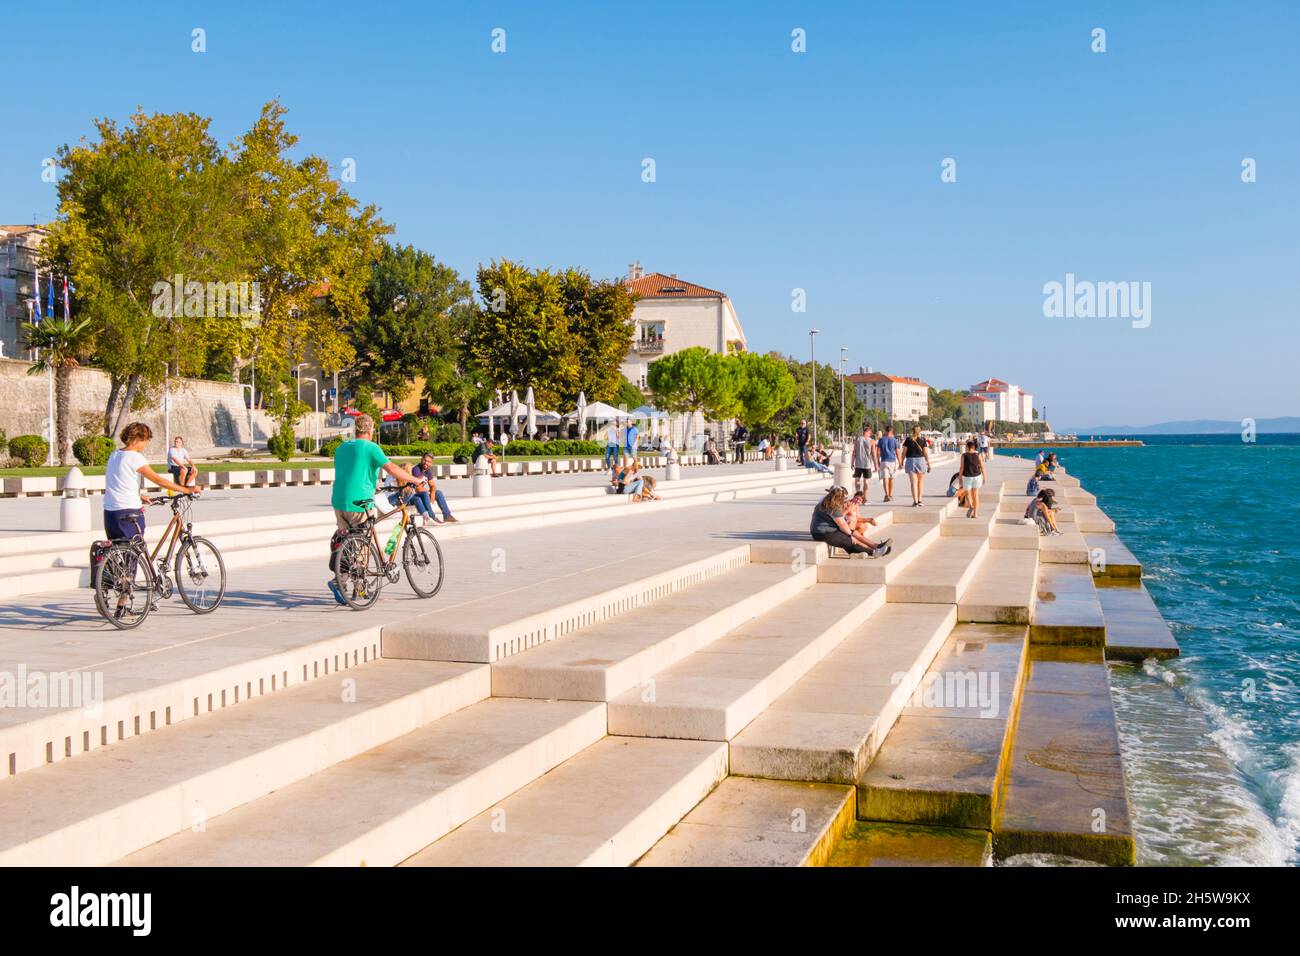 Obala kralja Petra Krešimira IV, paseo marítimo, en el órgano del mar, casco antiguo, Zadar, Croacia Foto de stock